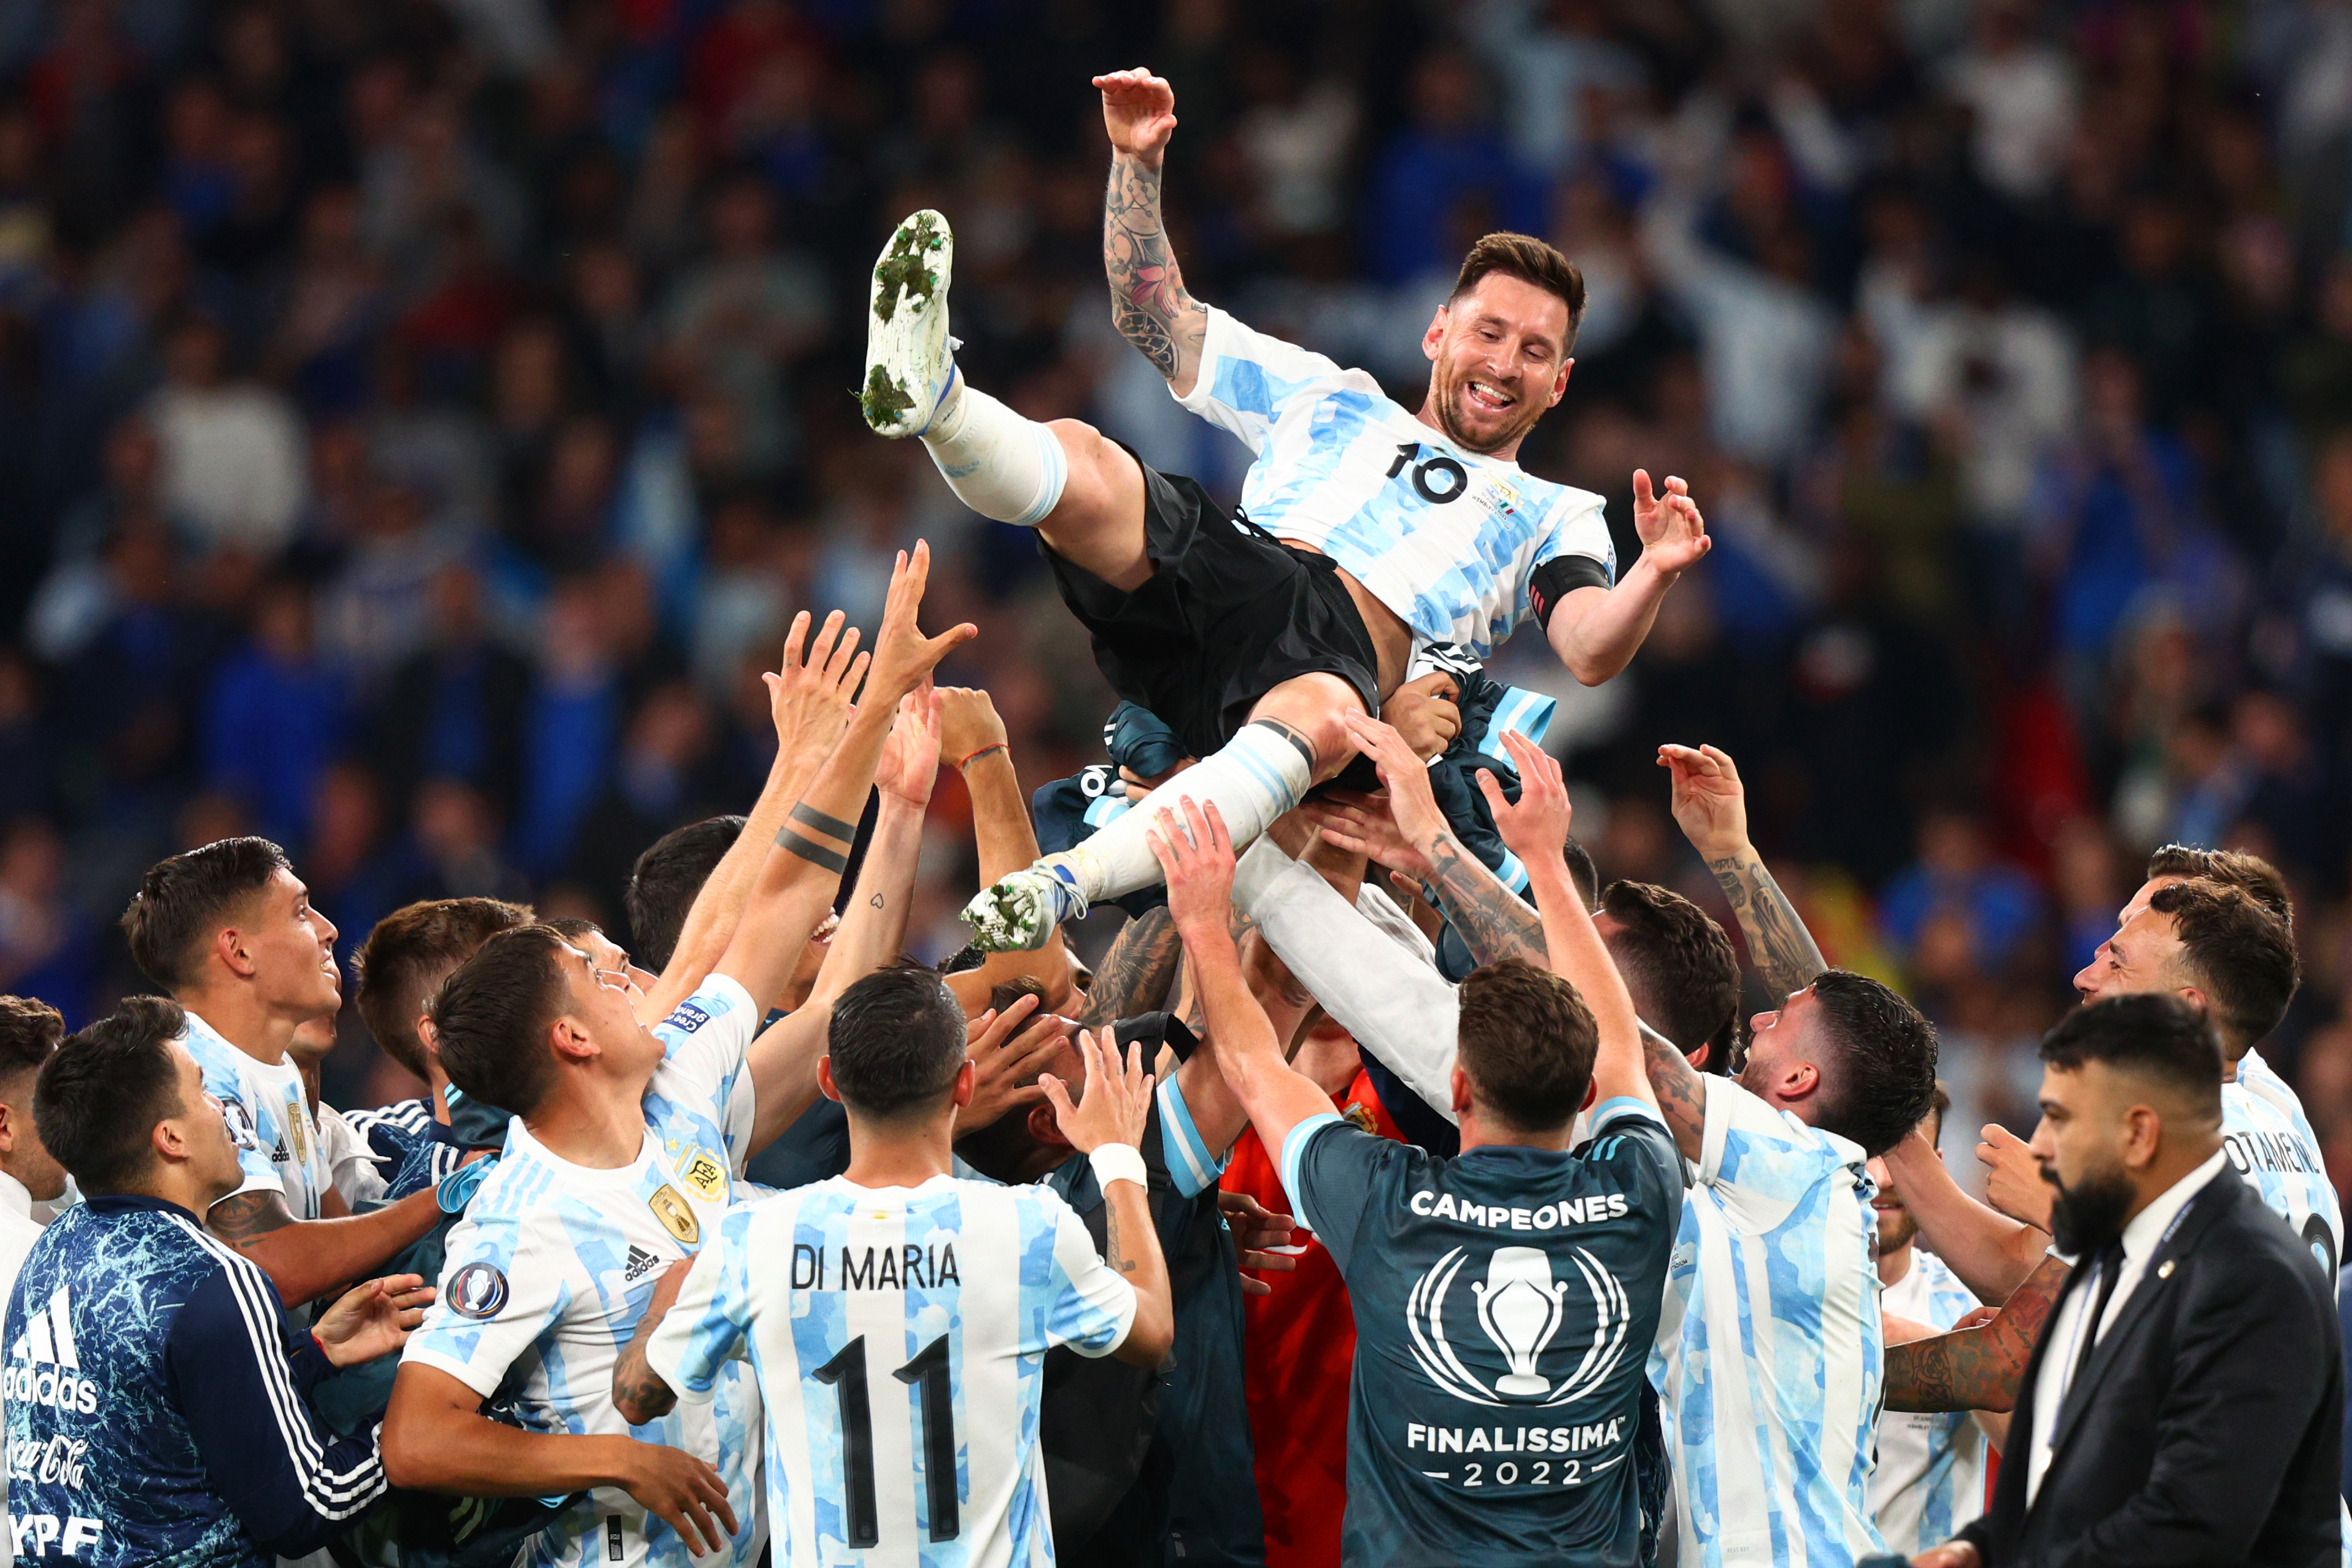 Messi/Argentina: Siêu sao Messi là biểu tượng của cả Argentina với hàng loạt thành tích vô tiền khoáng hậu. Bức ảnh này ghi lại cảm xúc của Messi khi khoác áo đội tuyển nước nhà. Hãy cùng đồng cảm với anh ta và tự hào về niềm tự hào của đất nước chúng ta.